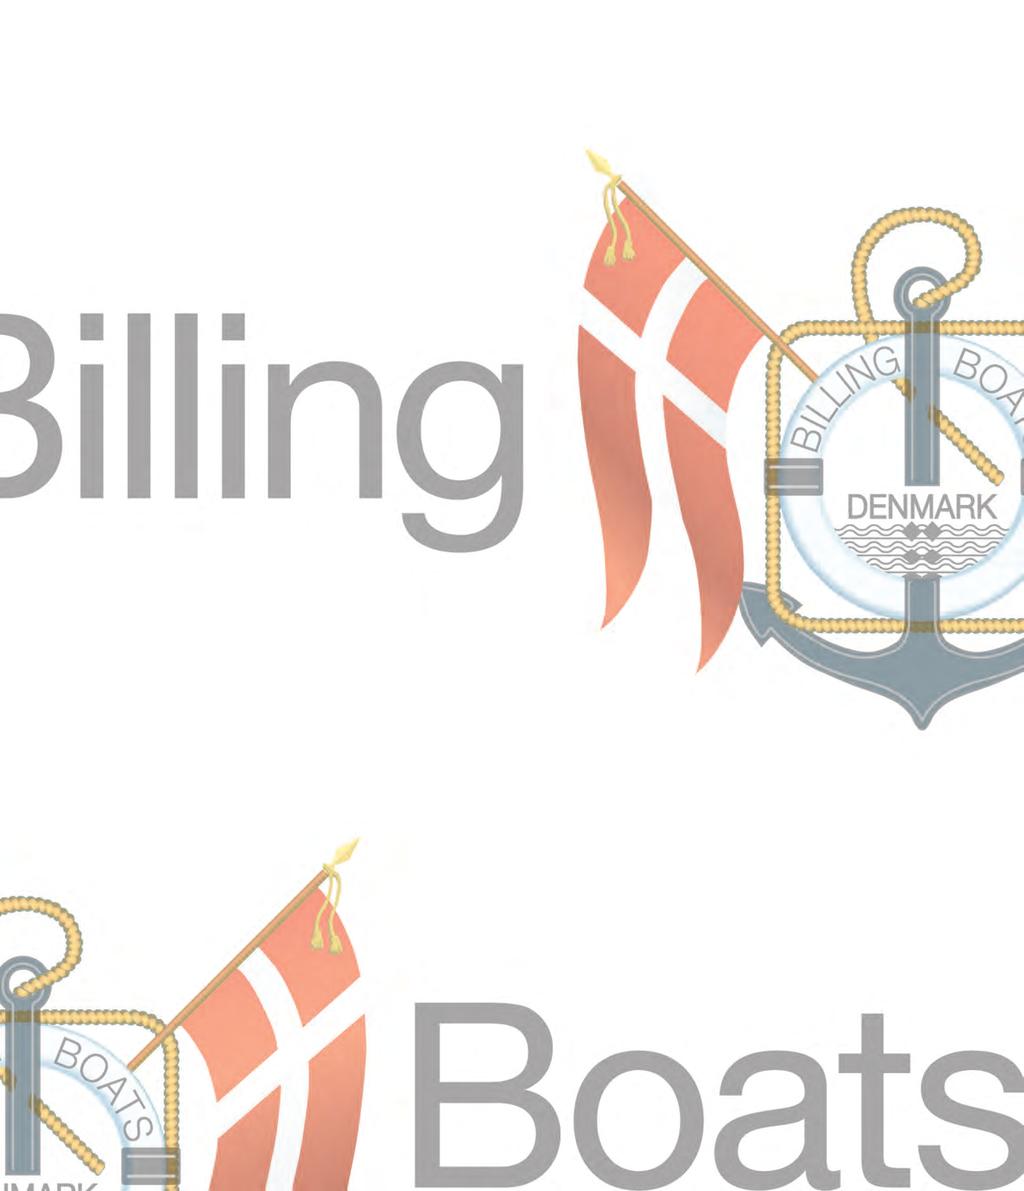 Billing Boats Serie Mini SerieMini U.S. COAST GUARD/R.N.L.I.